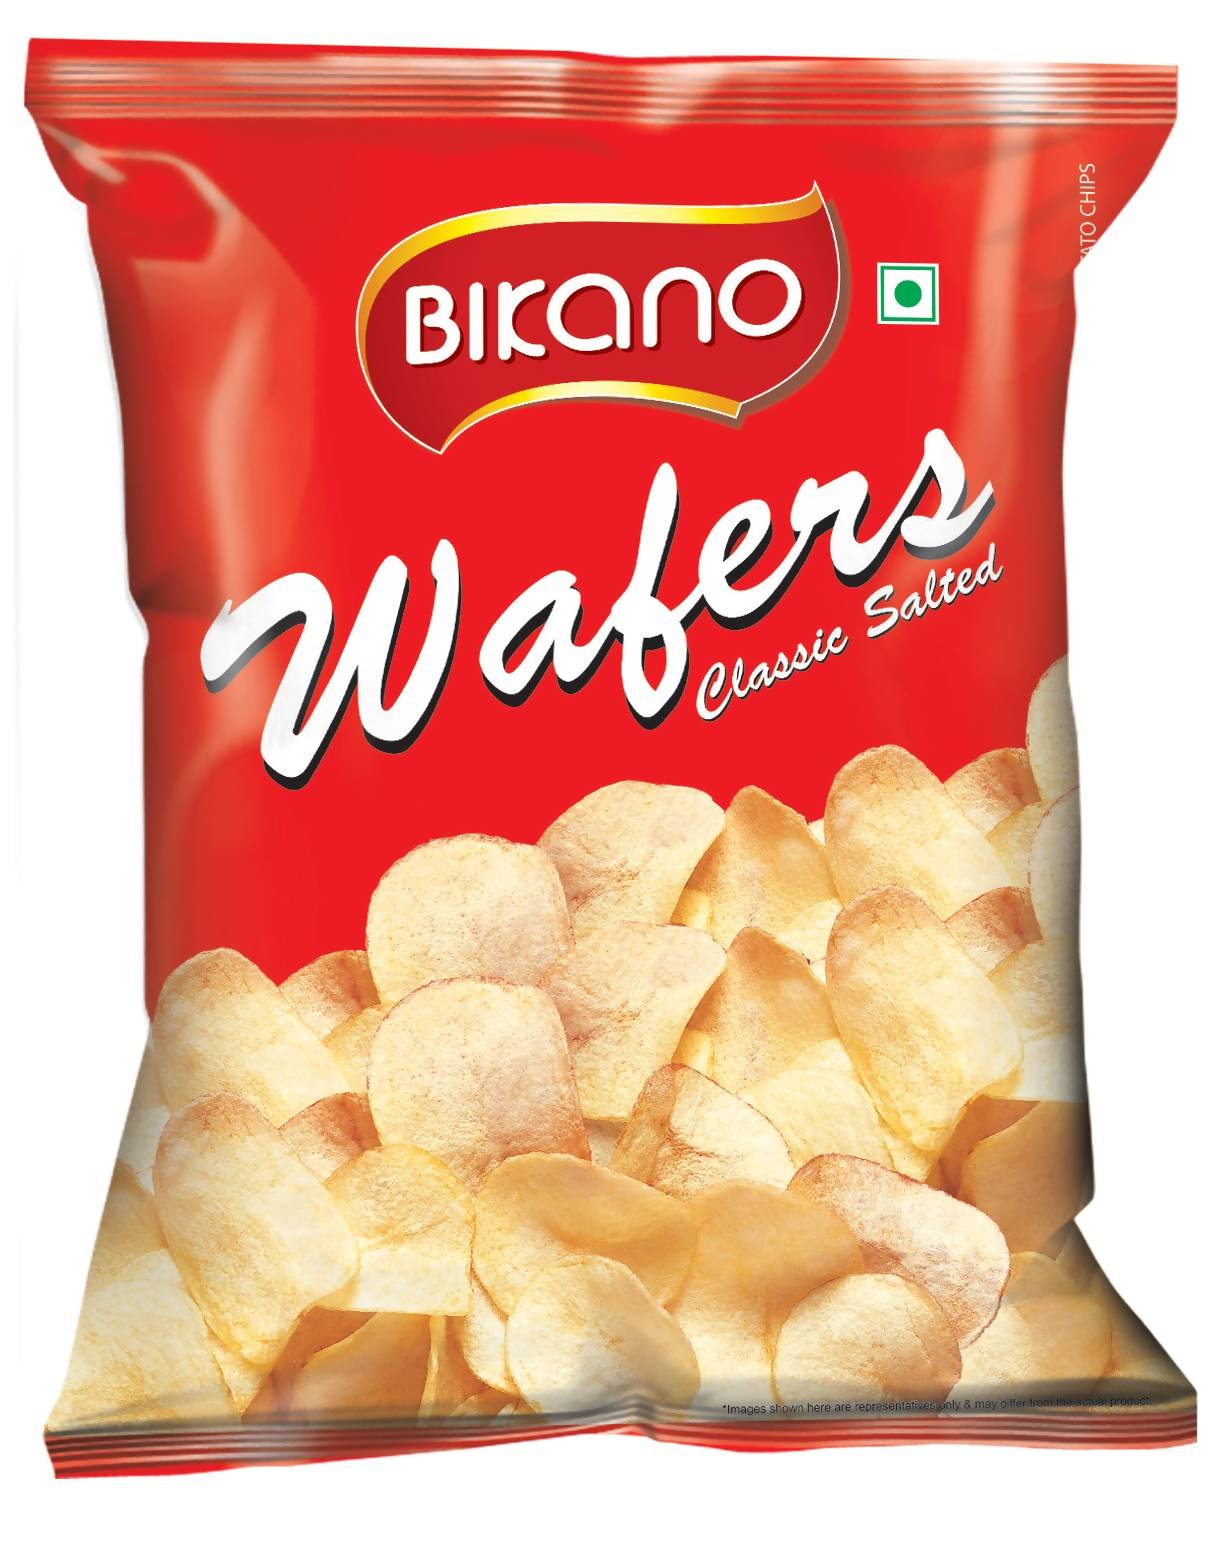 Bikano Wafers